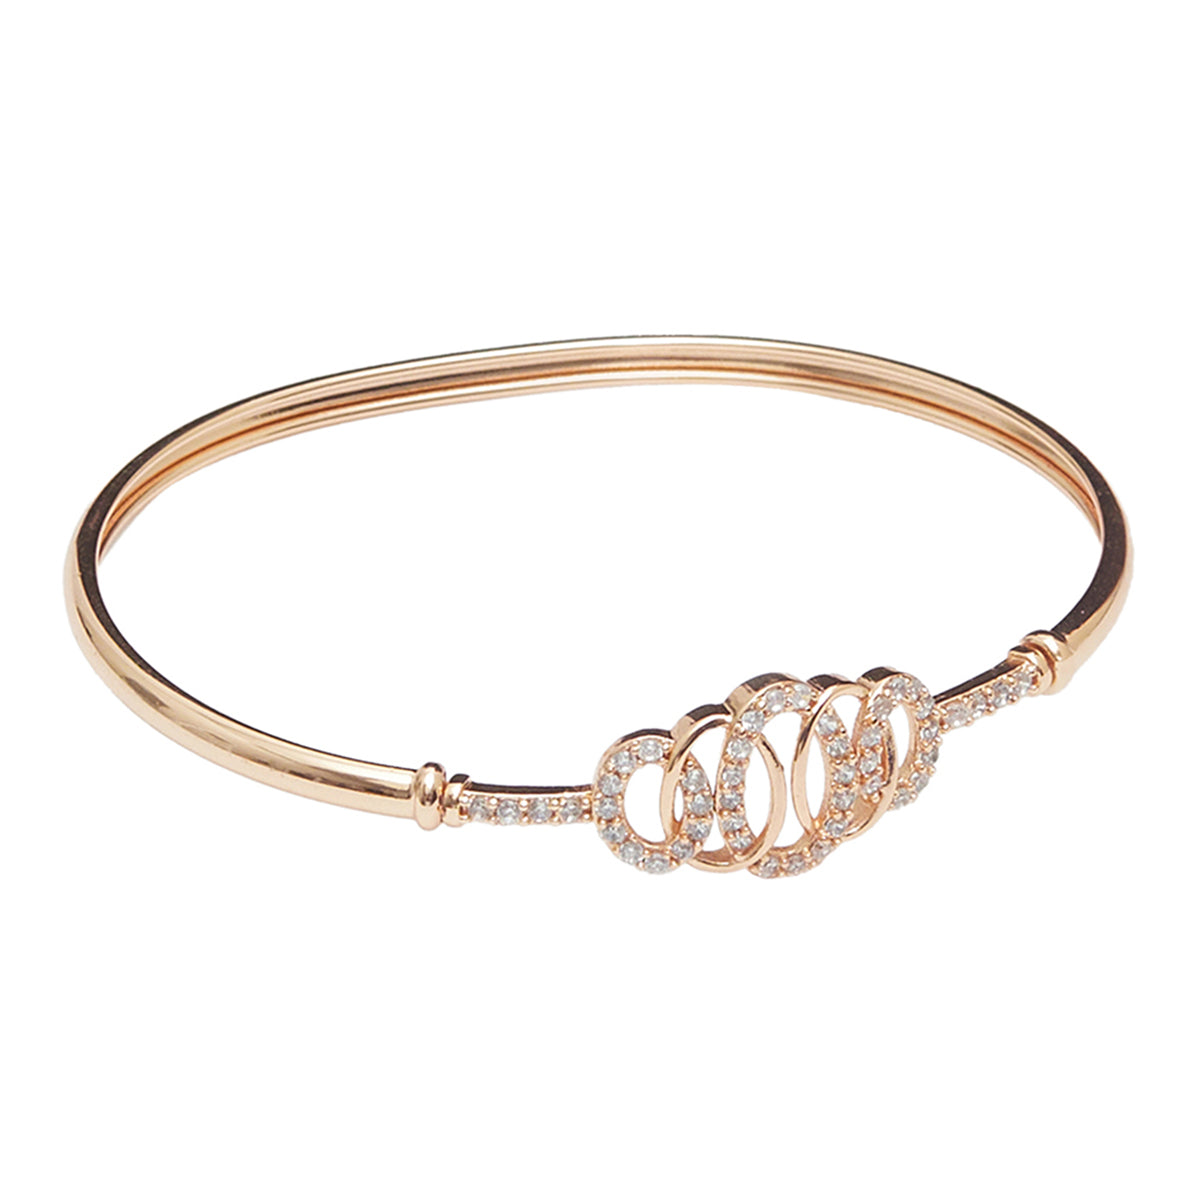 Crown Design Rose Gold Bracelet with Gemstones